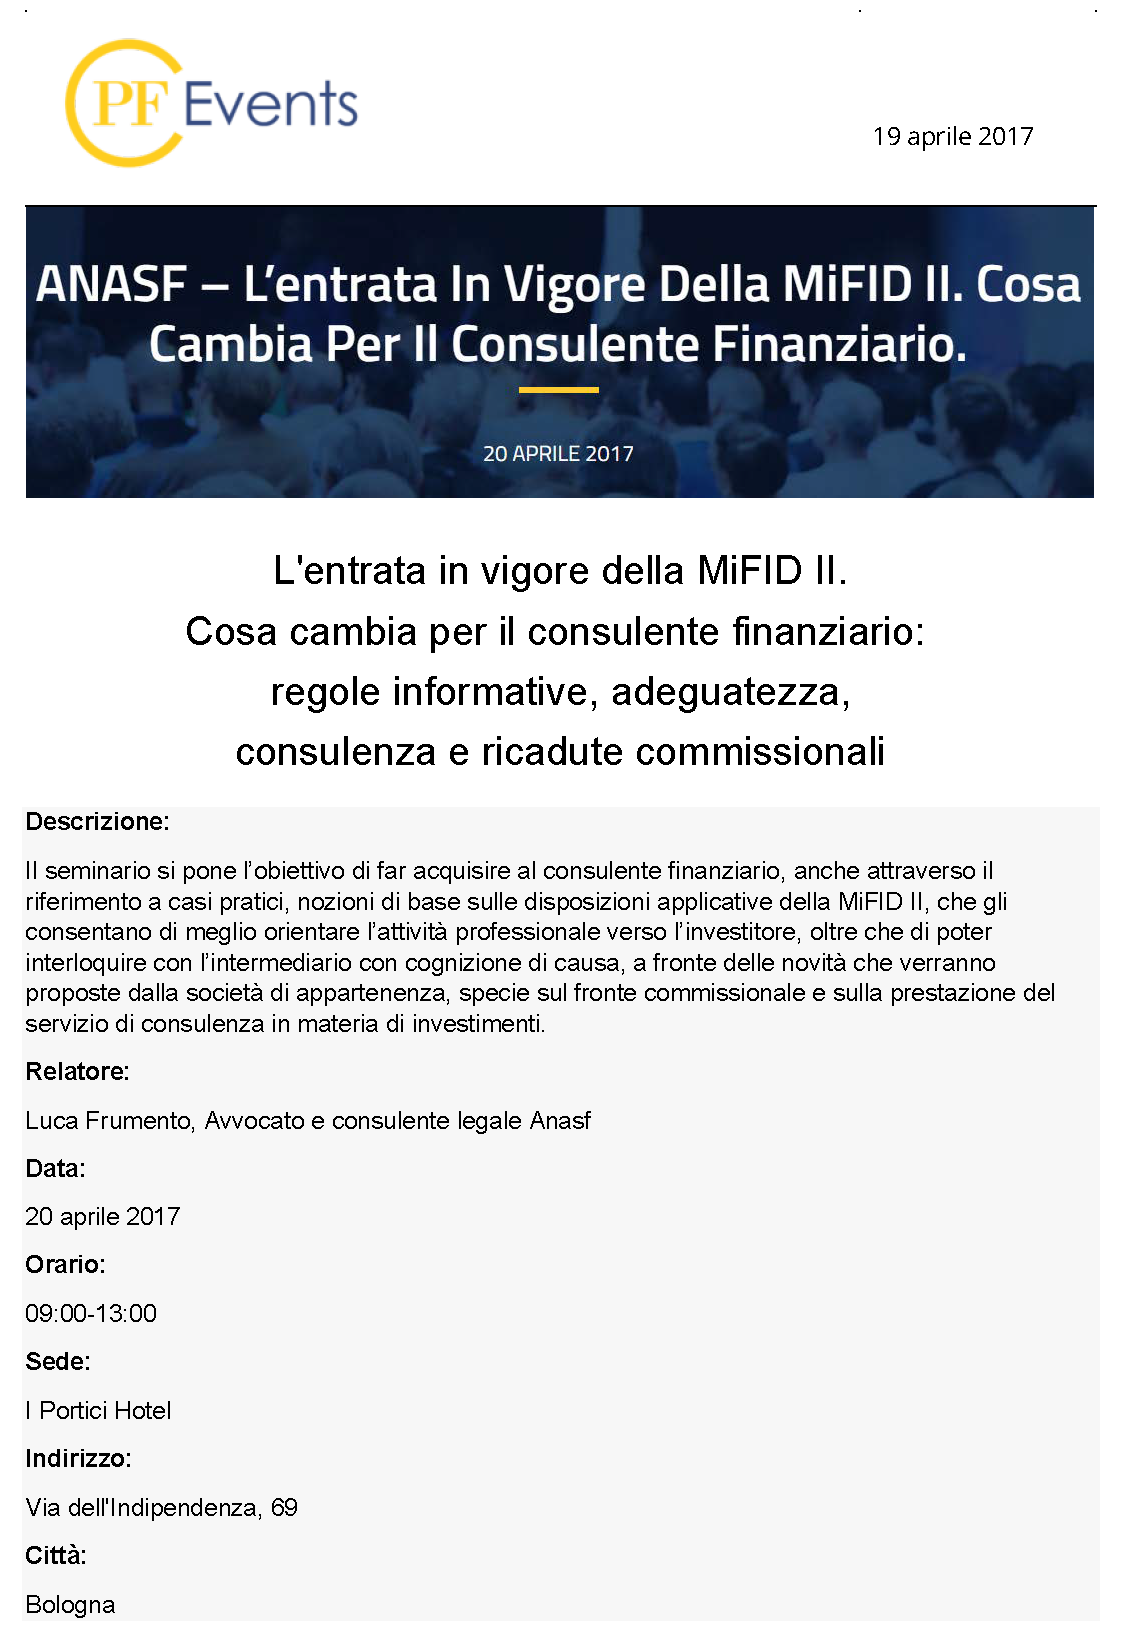 ANASF - L'entrata in vigore della MiFID II. Cosa cambia per il consulente finanziario